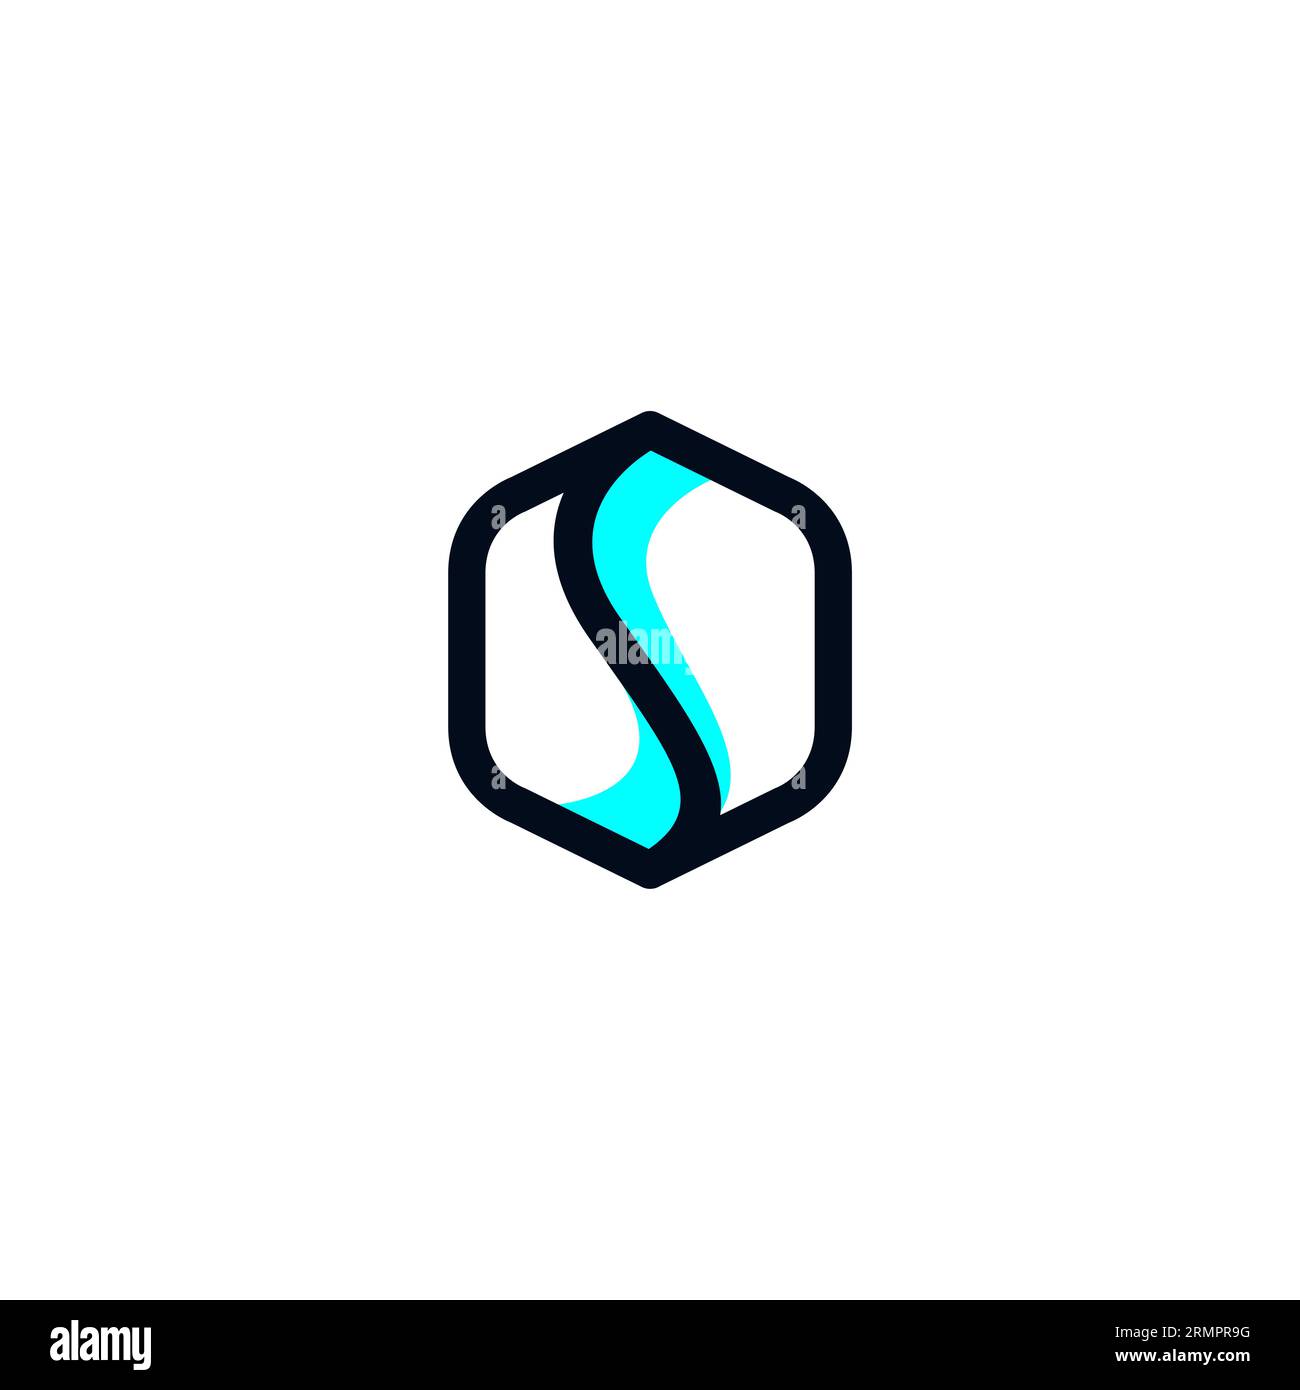 Letter S Modern Design. Icona S. Logo Hexagon Letter S. Illustrazione Vettoriale